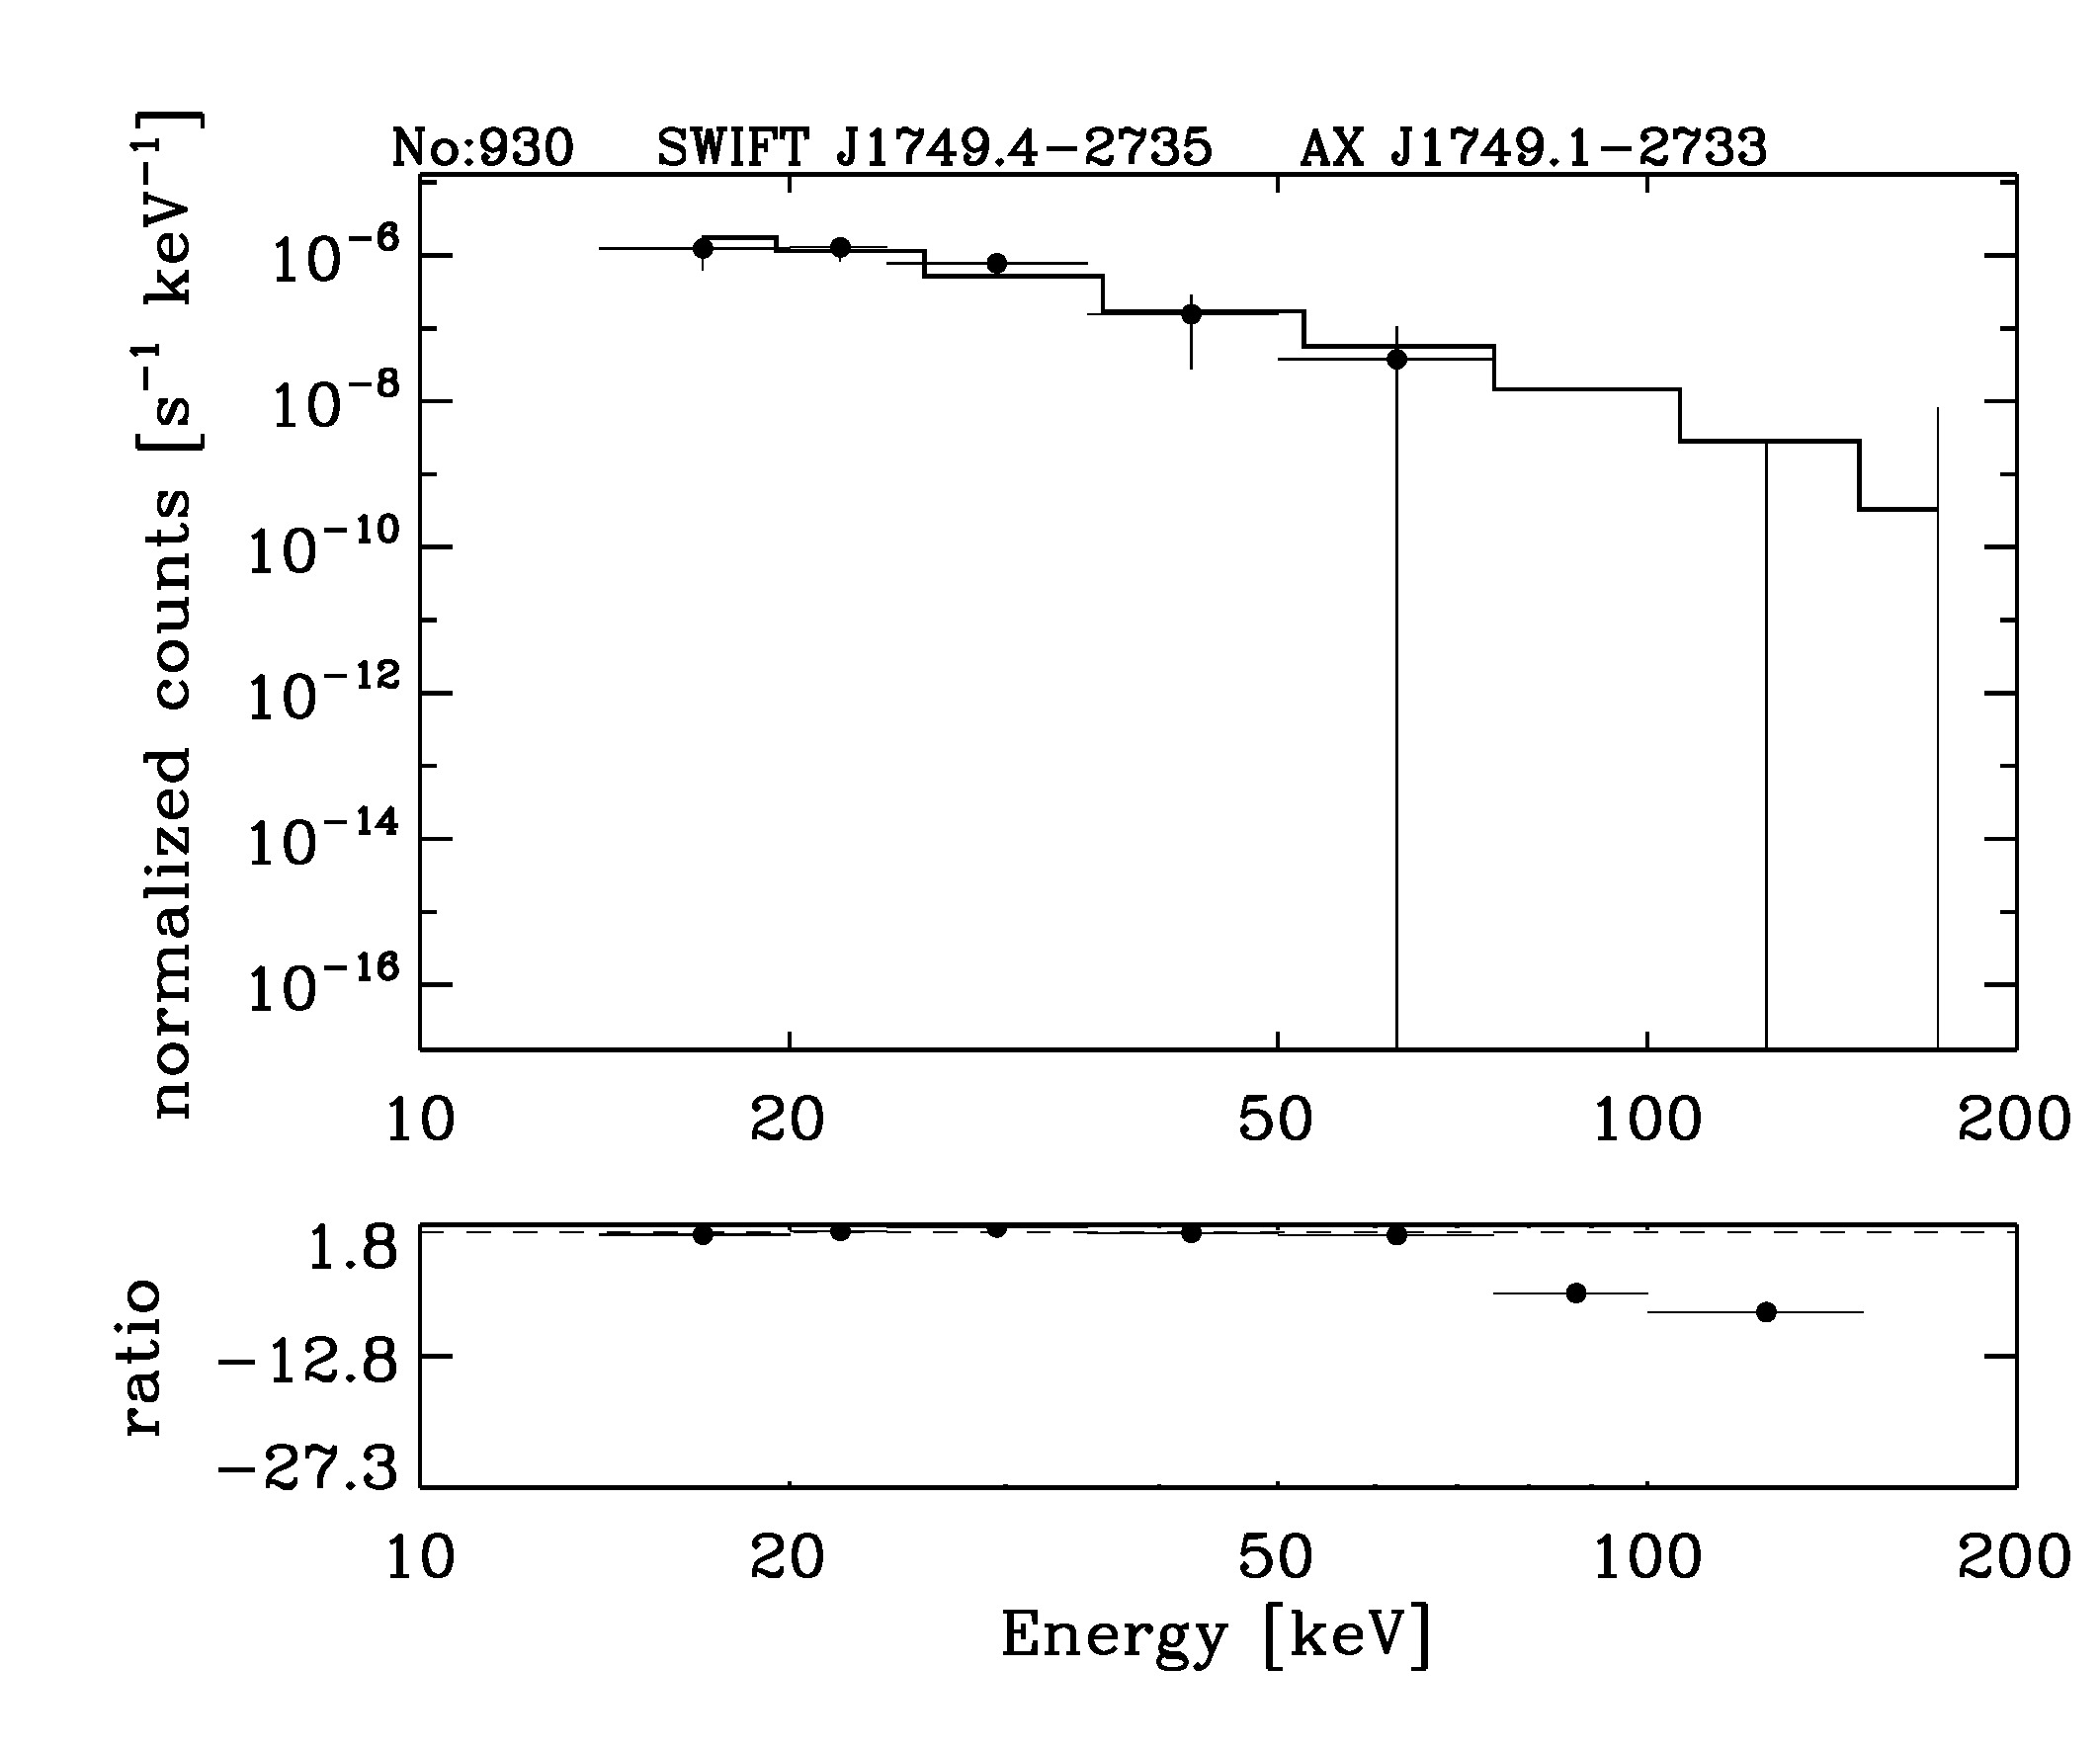 BAT Spectrum for SWIFT J1749.4-2735